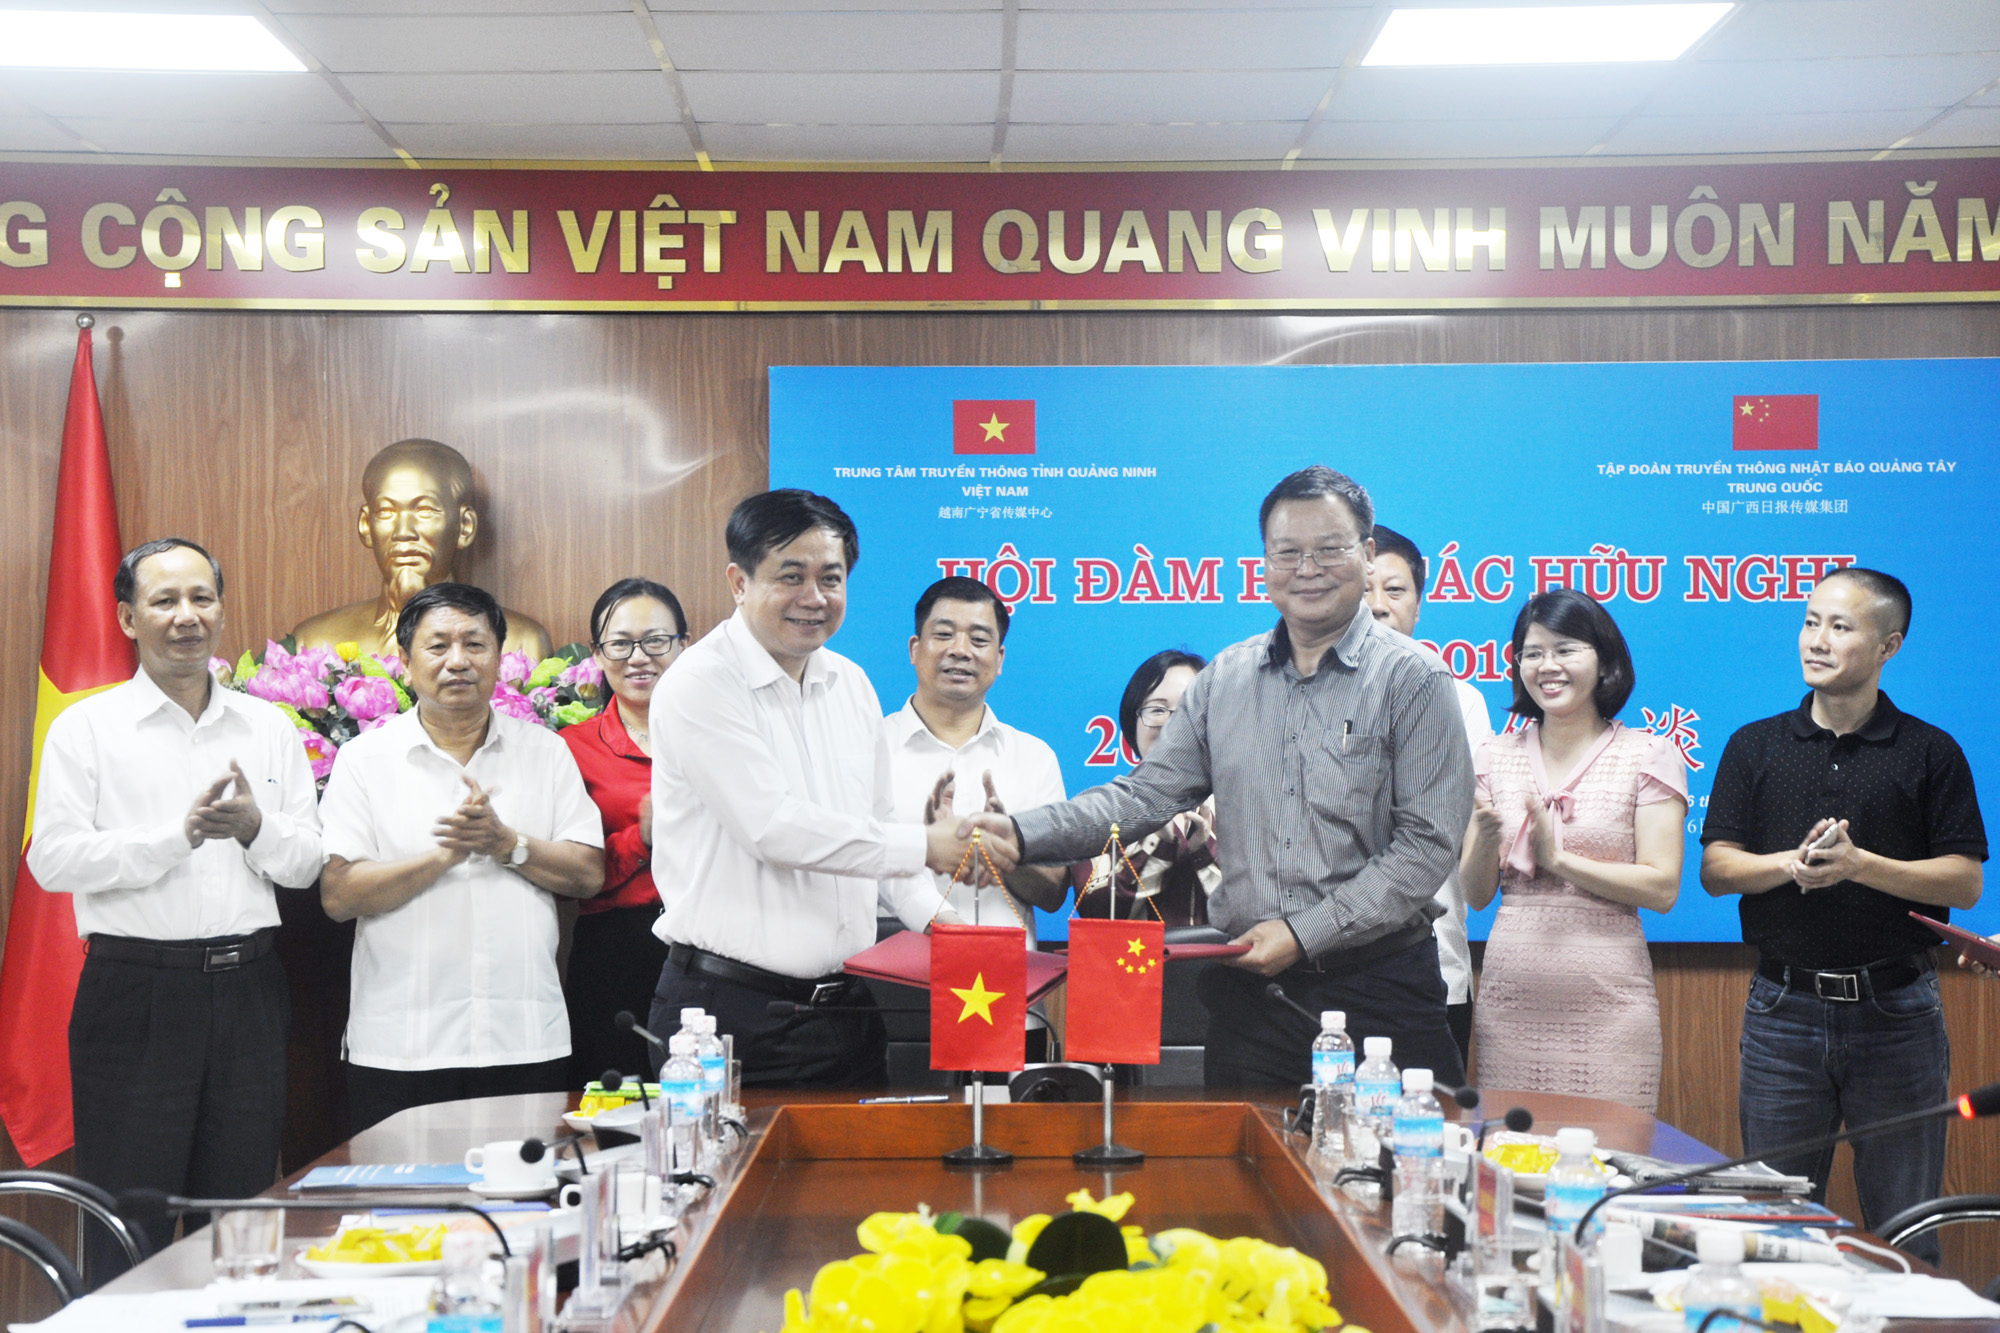 Trung tâm Truyền thông tỉnh Quảng Ninh là đơn vị có quan hệ hợp tác thường xuyên với Tập đoàn Truyền thông Nhật Báo Quảng Tây ký kết biên bản ghi nhớ hợp tác năm 2019. (Ảnh: Thu Chung)